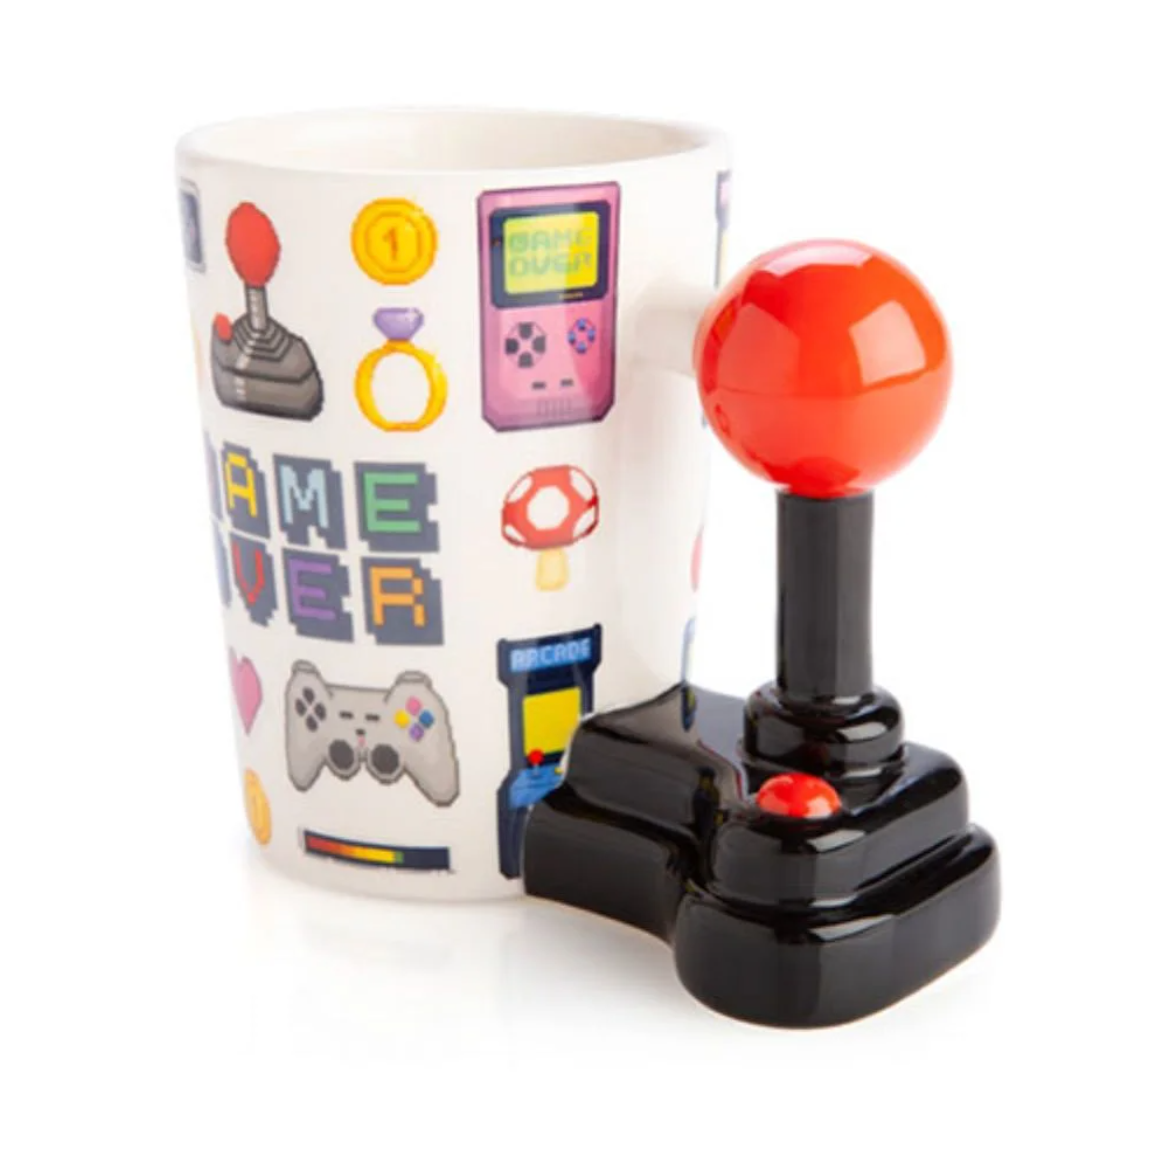 Retro video game mug